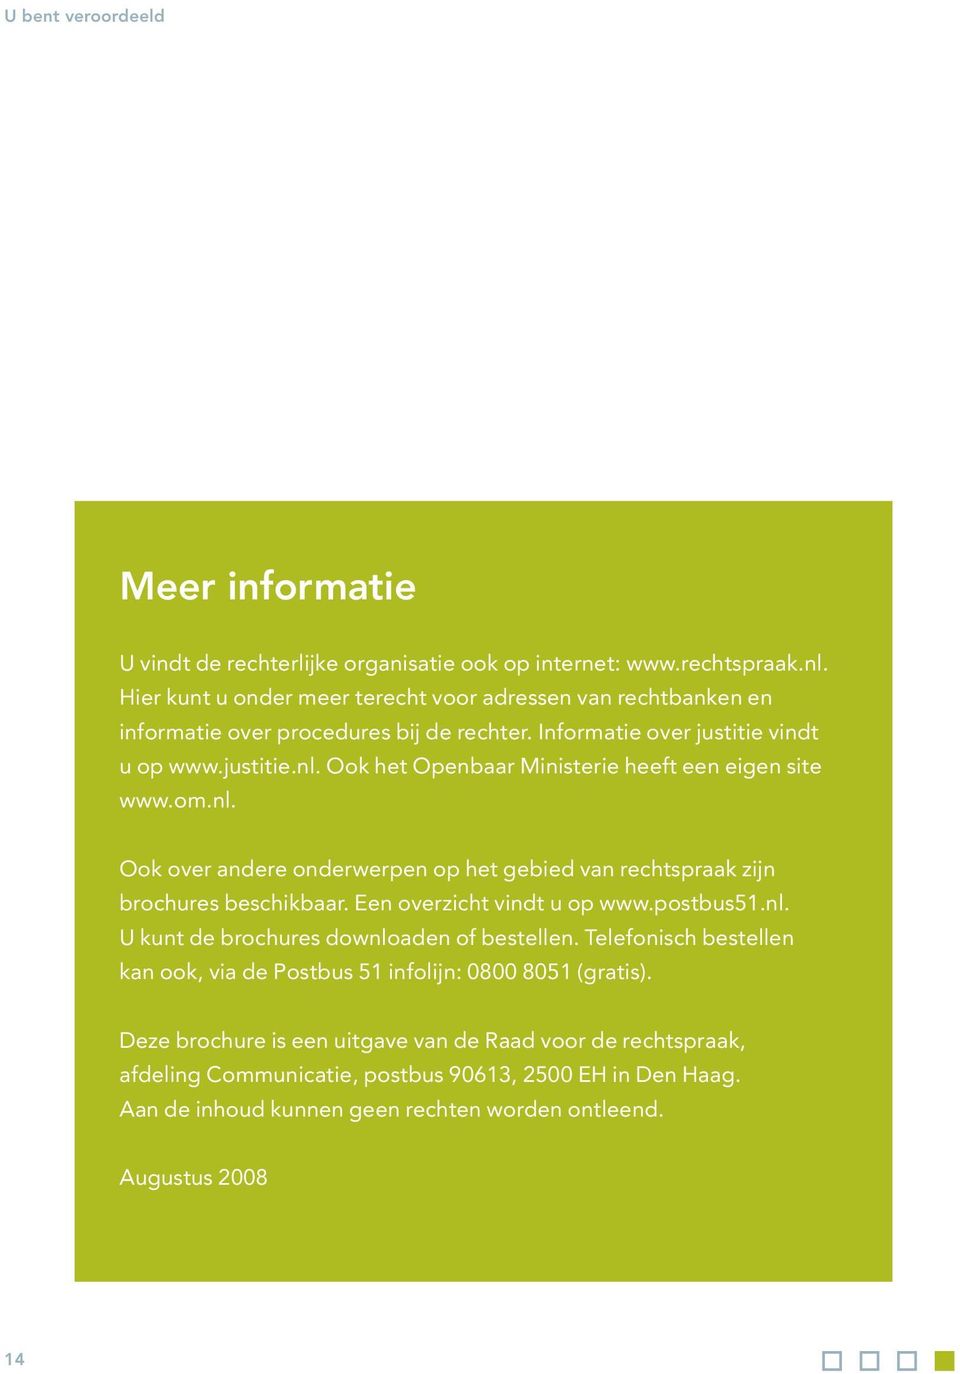 Ook het Openbaar Ministerie heeft een eigen site www.om.nl. Ook over andere onderwerpen op het gebied van rechtspraak zijn brochures beschikbaar. Een overzicht vindt u op www.postbus51.nl. U kunt de brochures downloaden of bestellen.